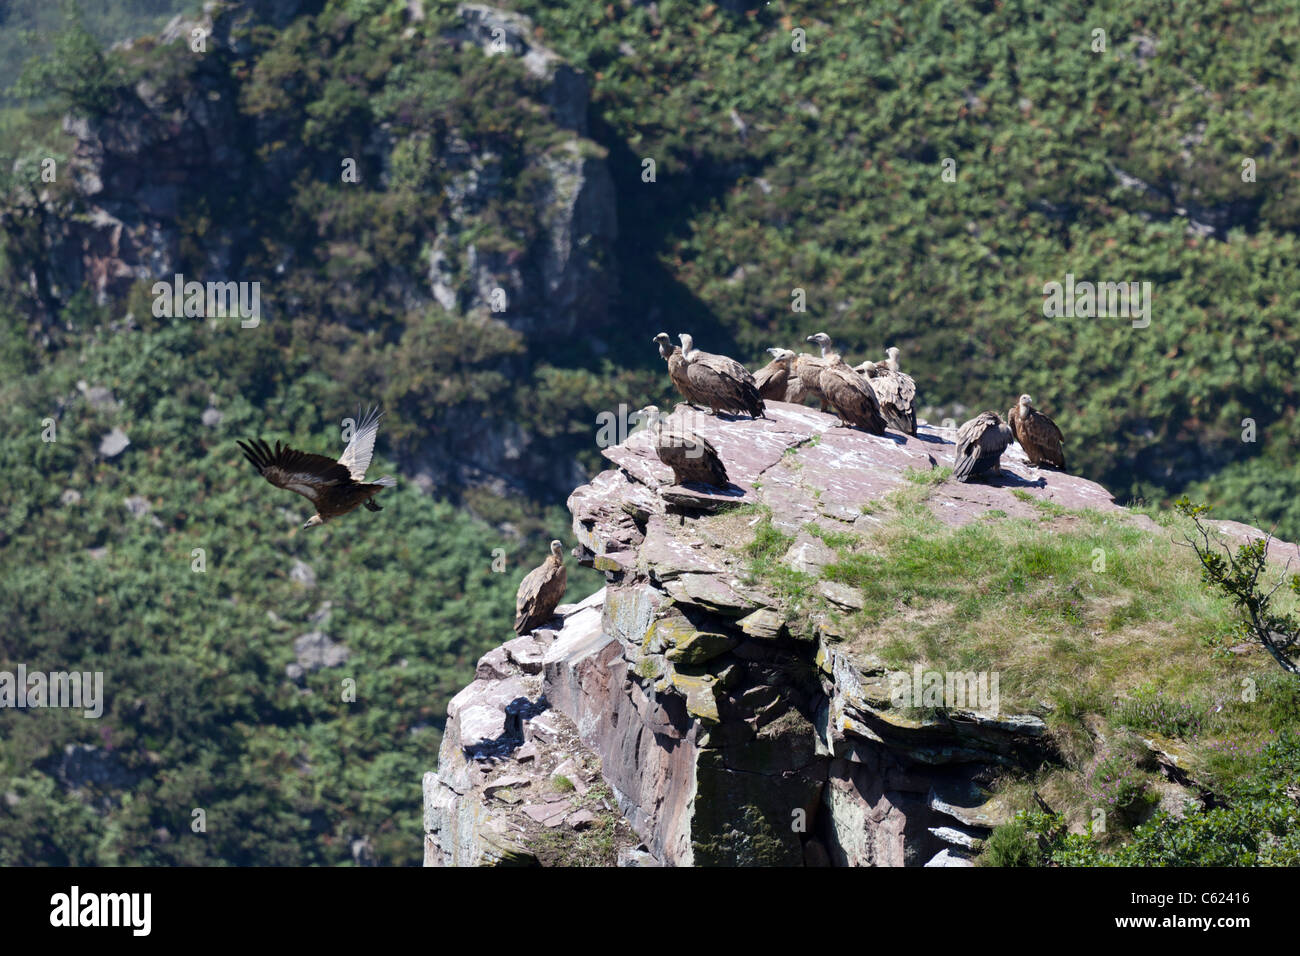 Dans l'ouest des Pyrénées sauvages, des vautours en appui au niveau du sommet, (France). Vautours chauves se reposant hors d'atteinte. Banque D'Images